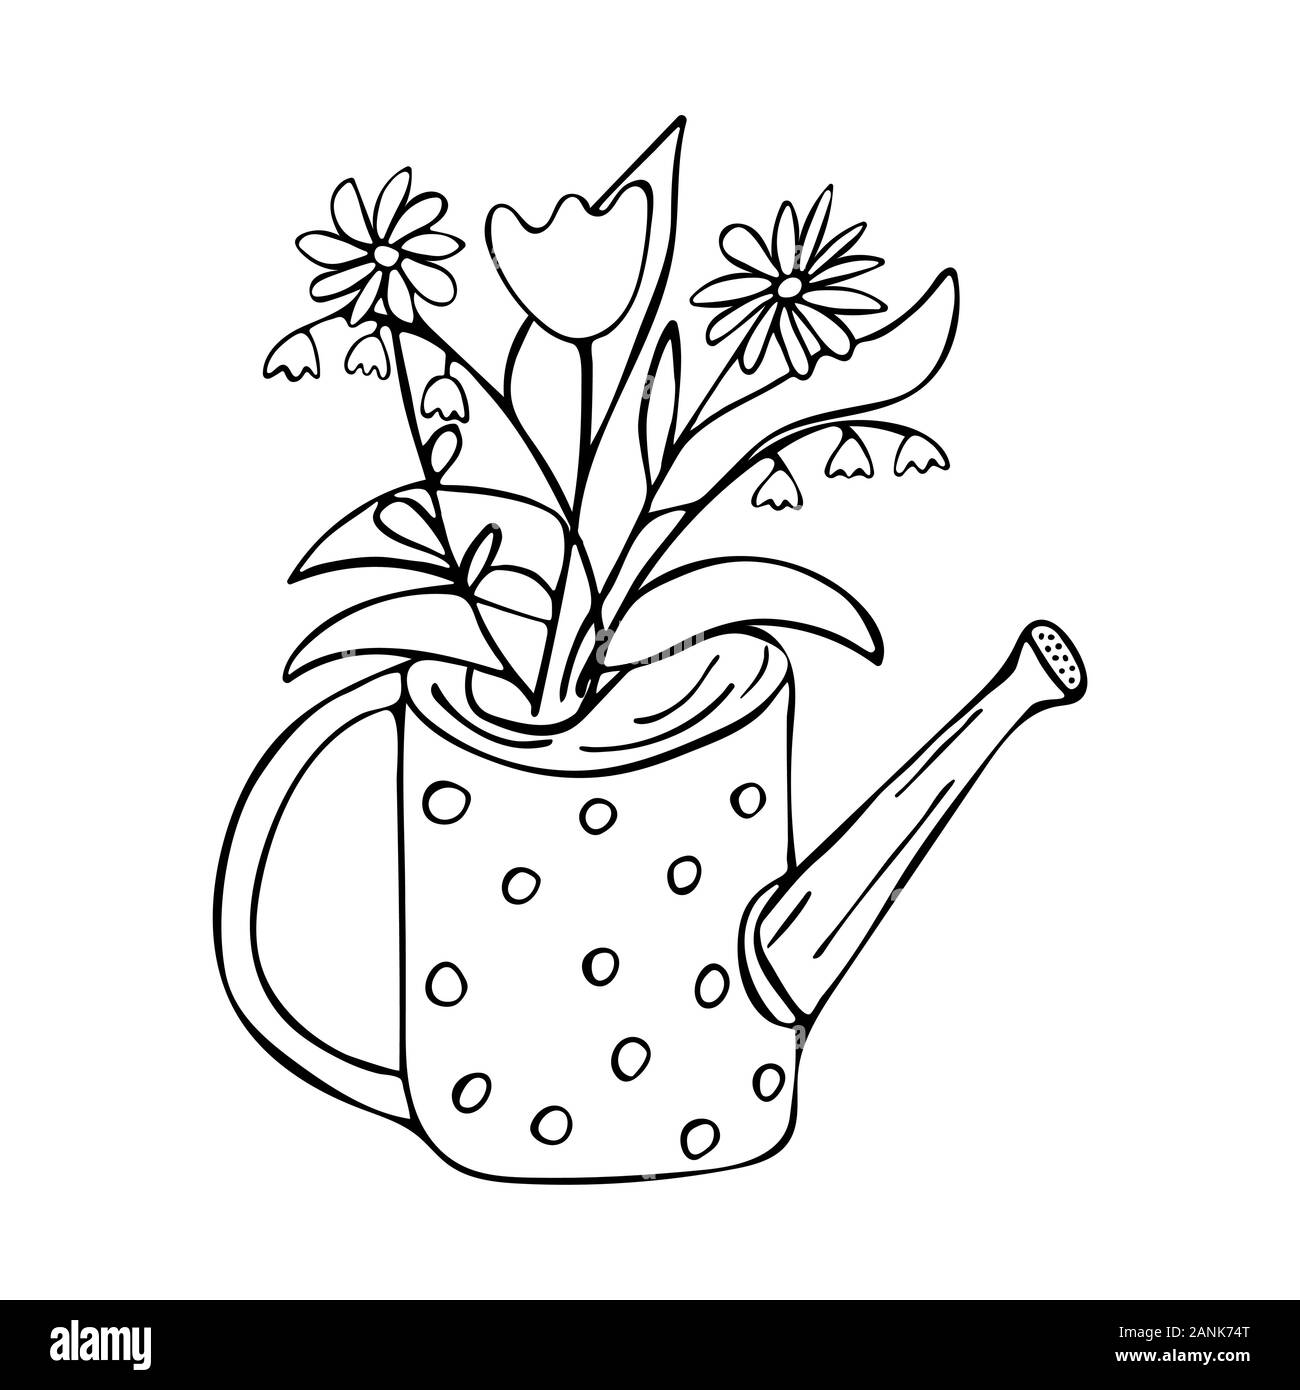 Gießkanne mit Blumen. Maiglöckchen, Tulip, Gänseblümchen. Schwarze und weiße Doodle style Abbildung. Frühling und Sommer Konzept Stock Vektor